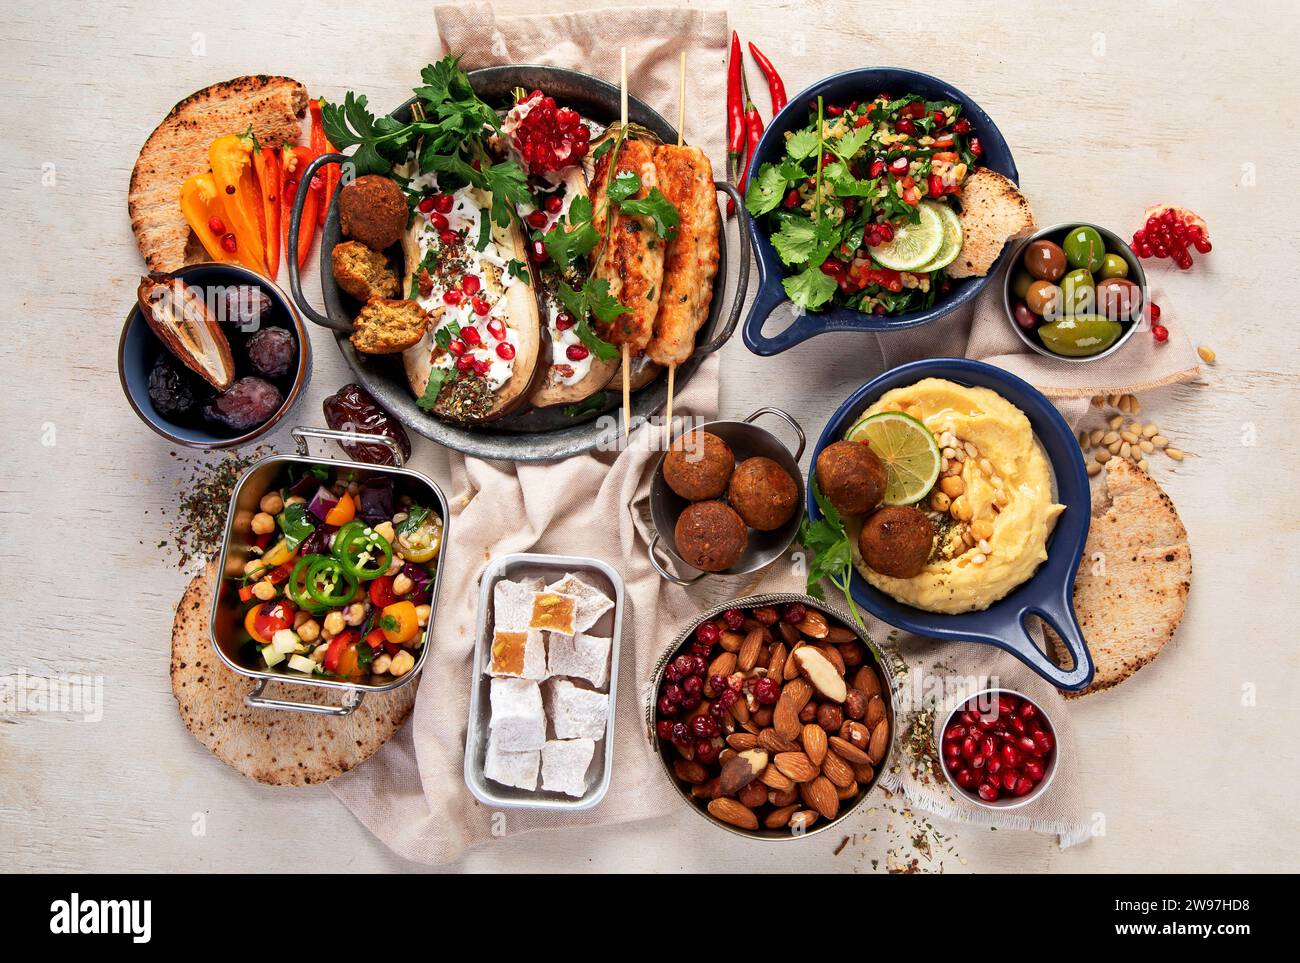 Piatti mediorientali o arabi su sfondo chiaro. Gustosi piatti tradizionali. Pview superiore Foto Stock